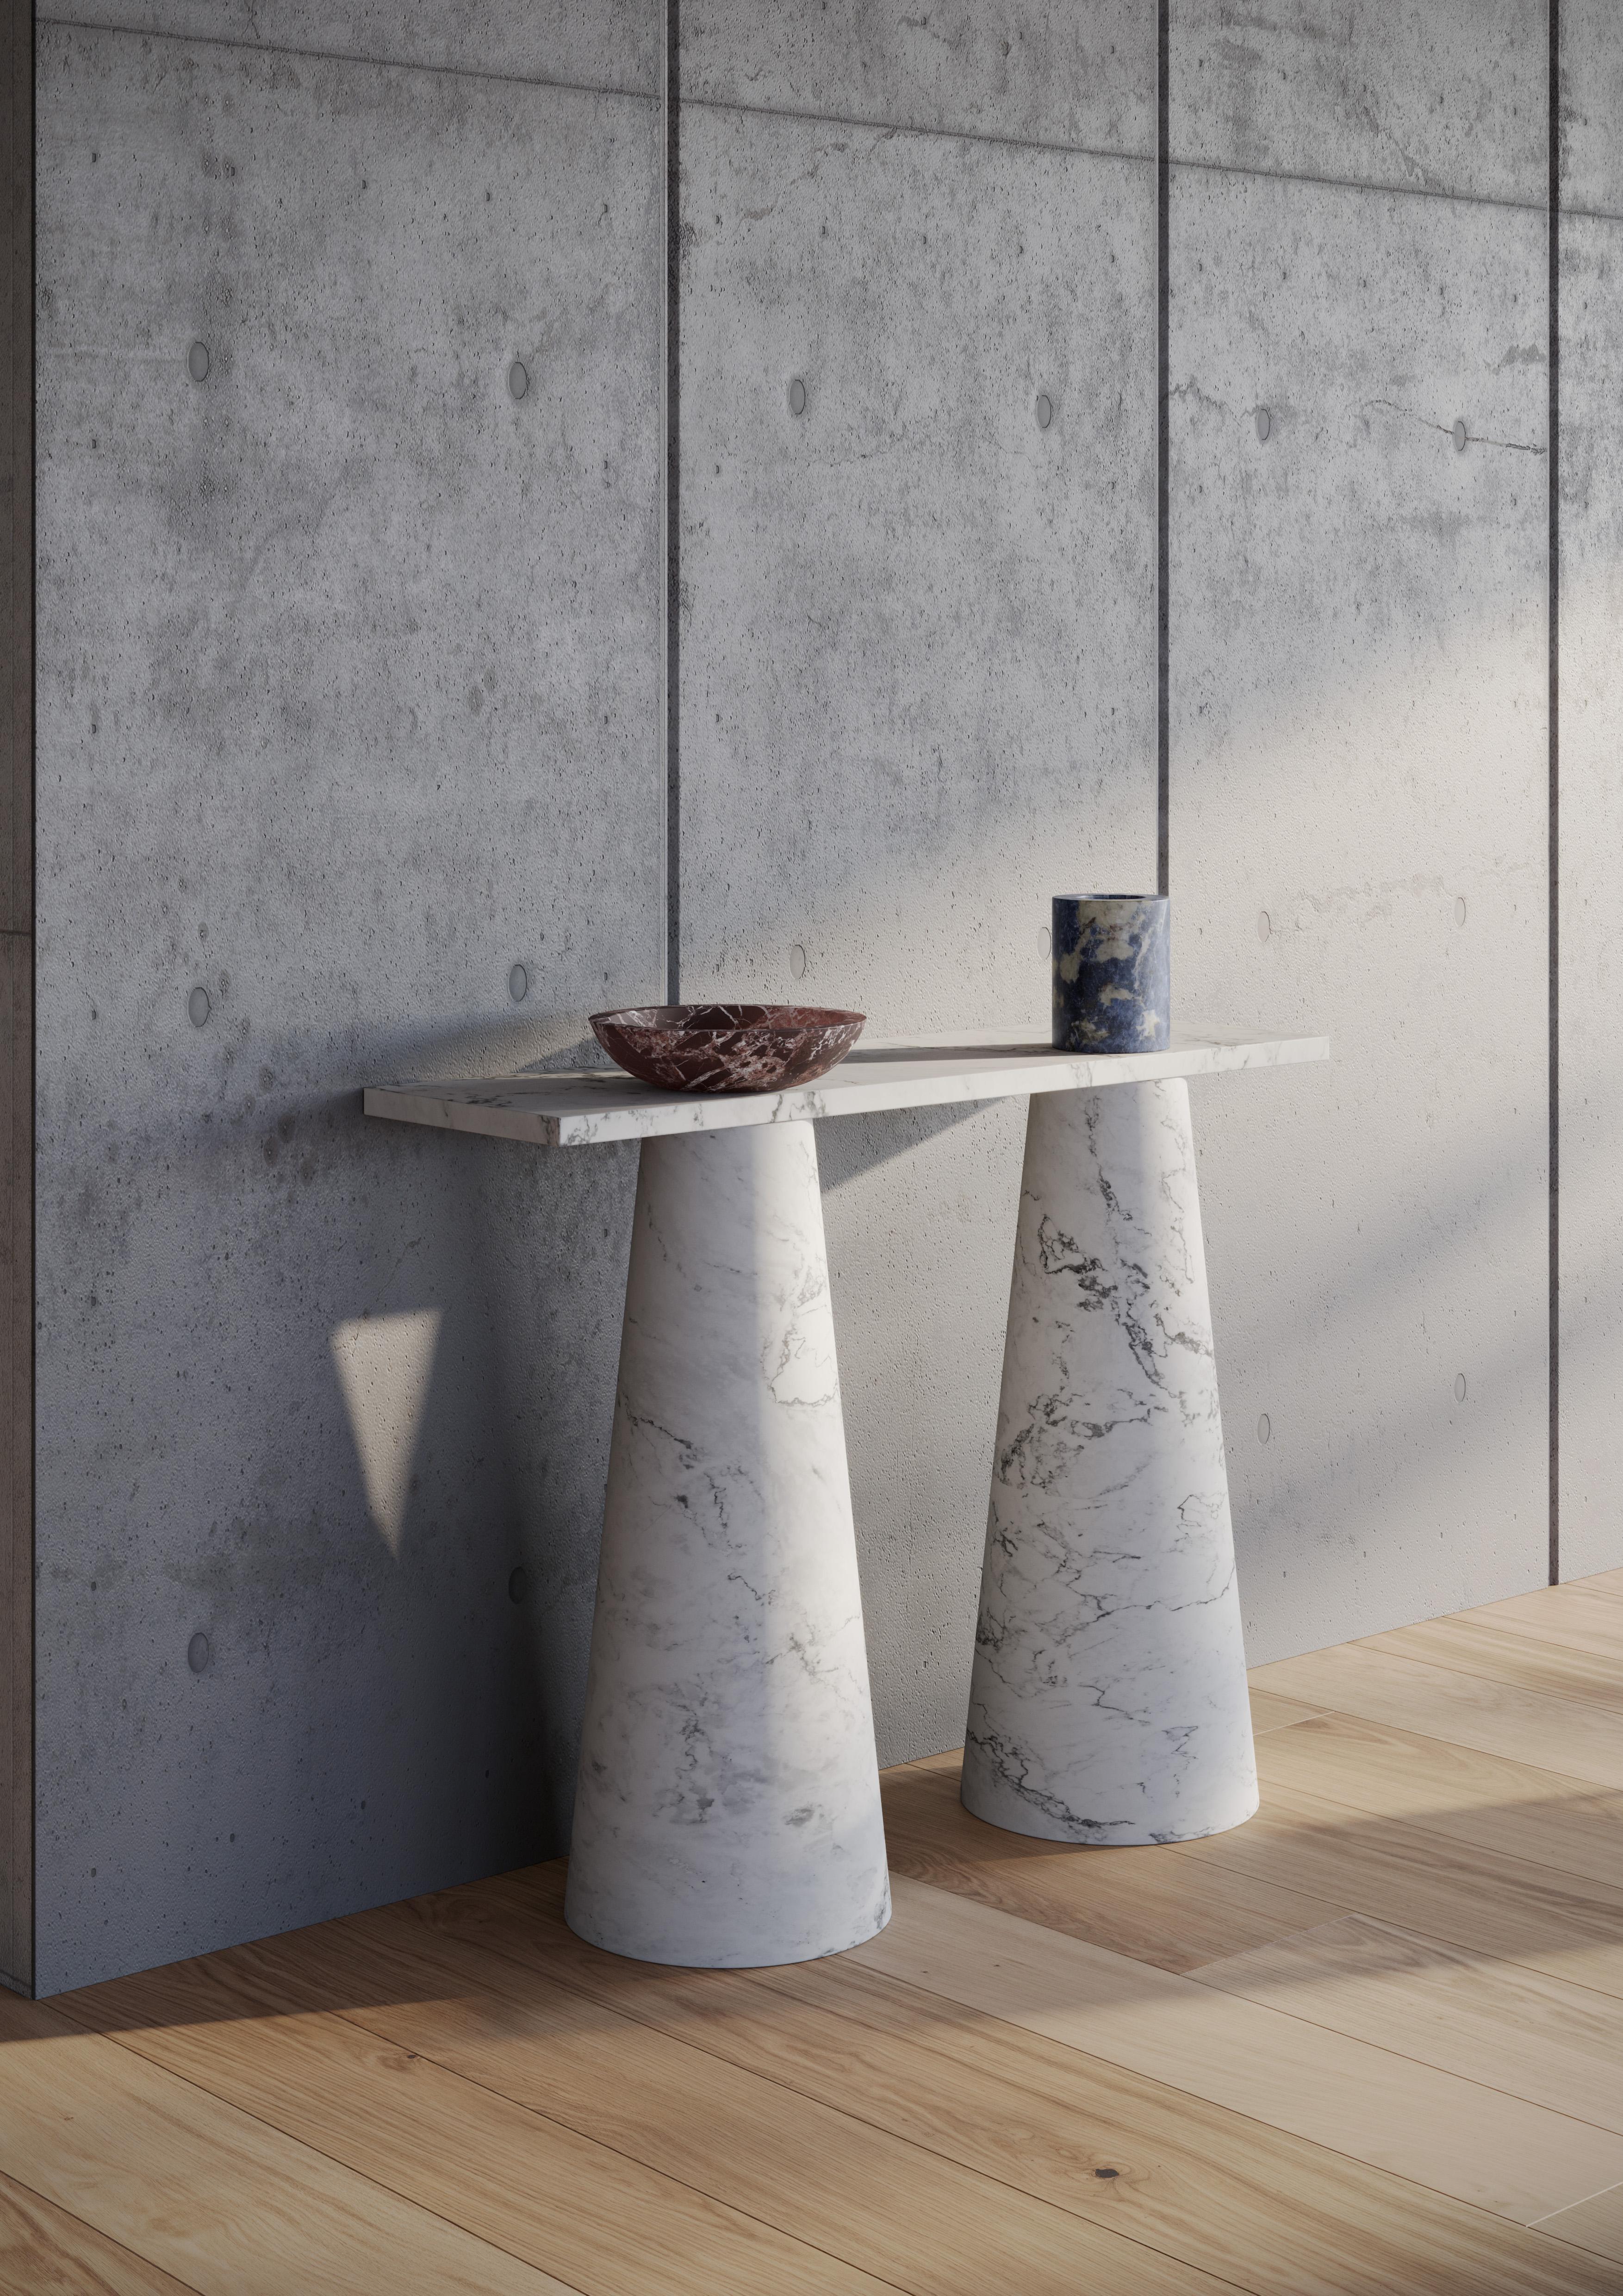 Console en marbre blanc conçue par Karen Chekerdjian, faisant partie de la Collection S/O - accessoires (coupe à fruits, bougies, vases à fleurs, tables en marbre rouge et noir).

Design étonnant à l'infini, Inside Out est disponible sous forme de